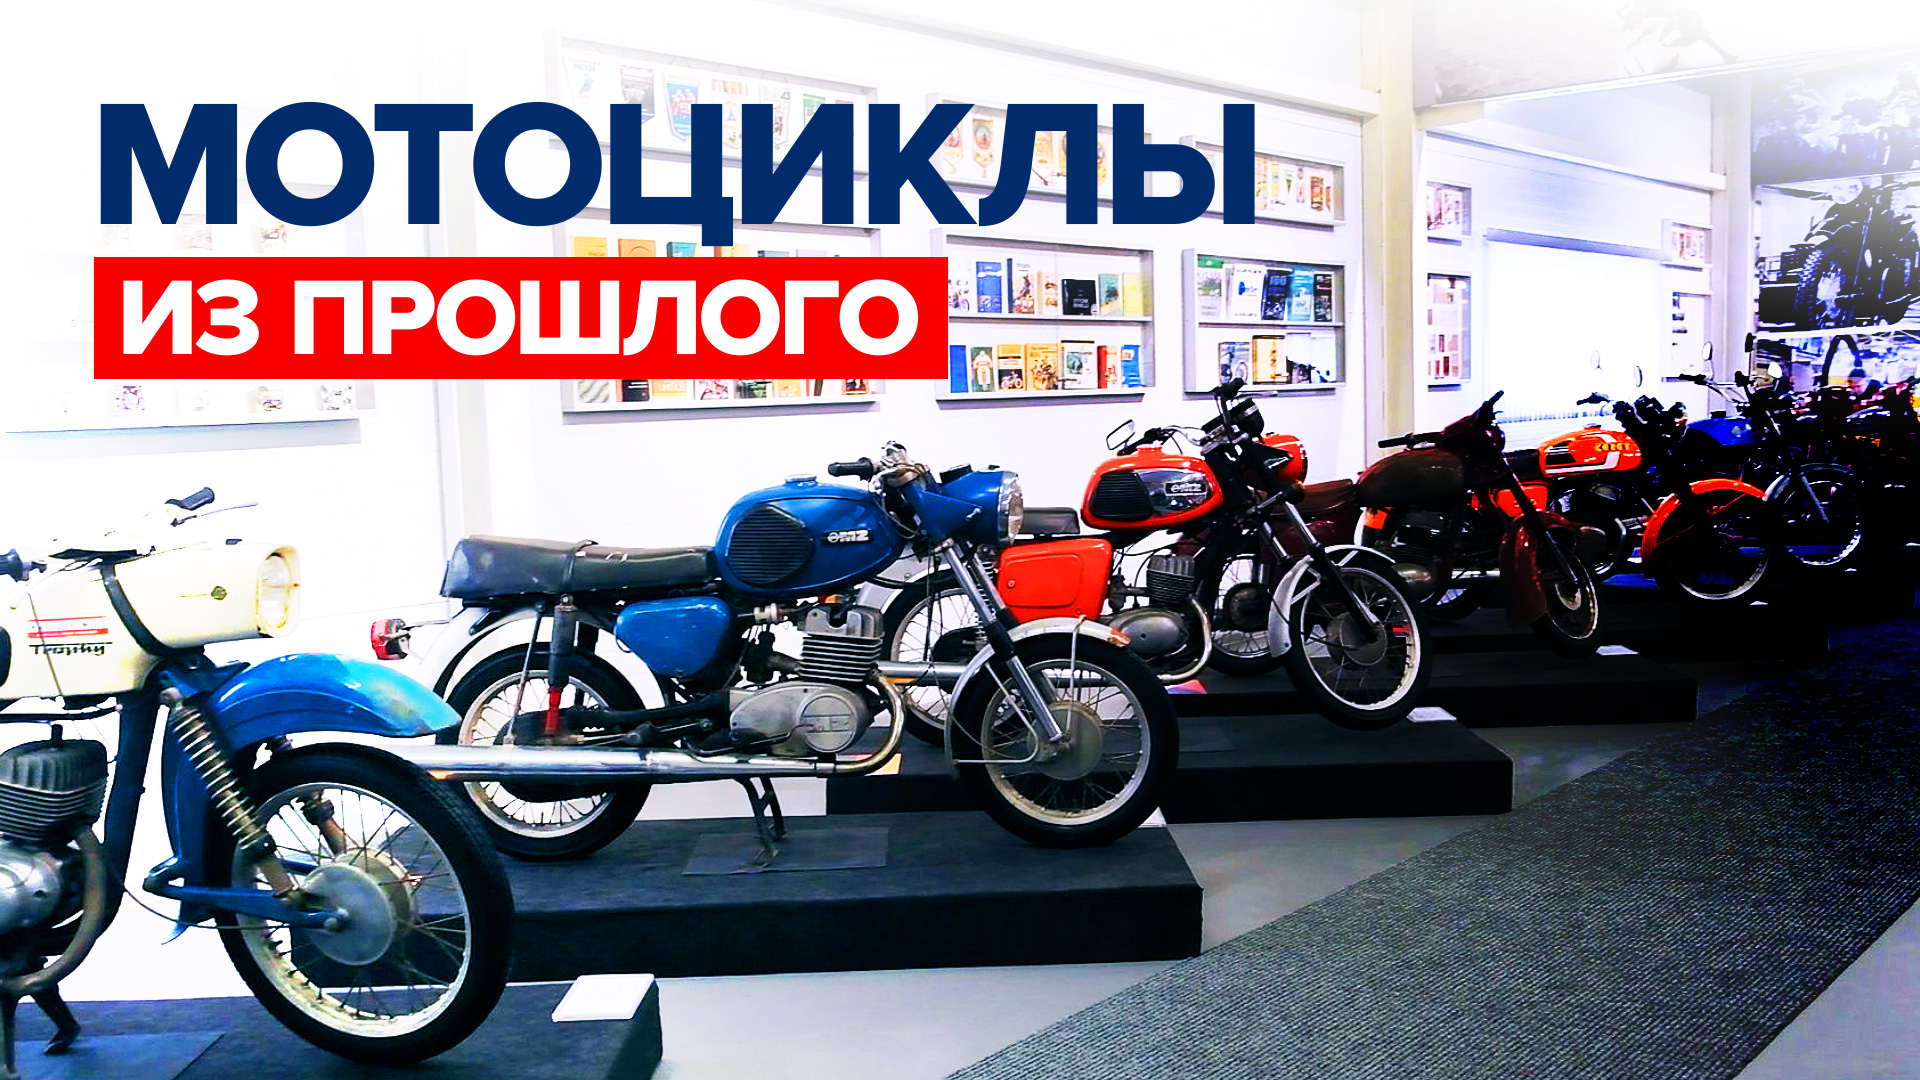 Раритет на ходу: музей советских мотоциклов открылся в Челябинске